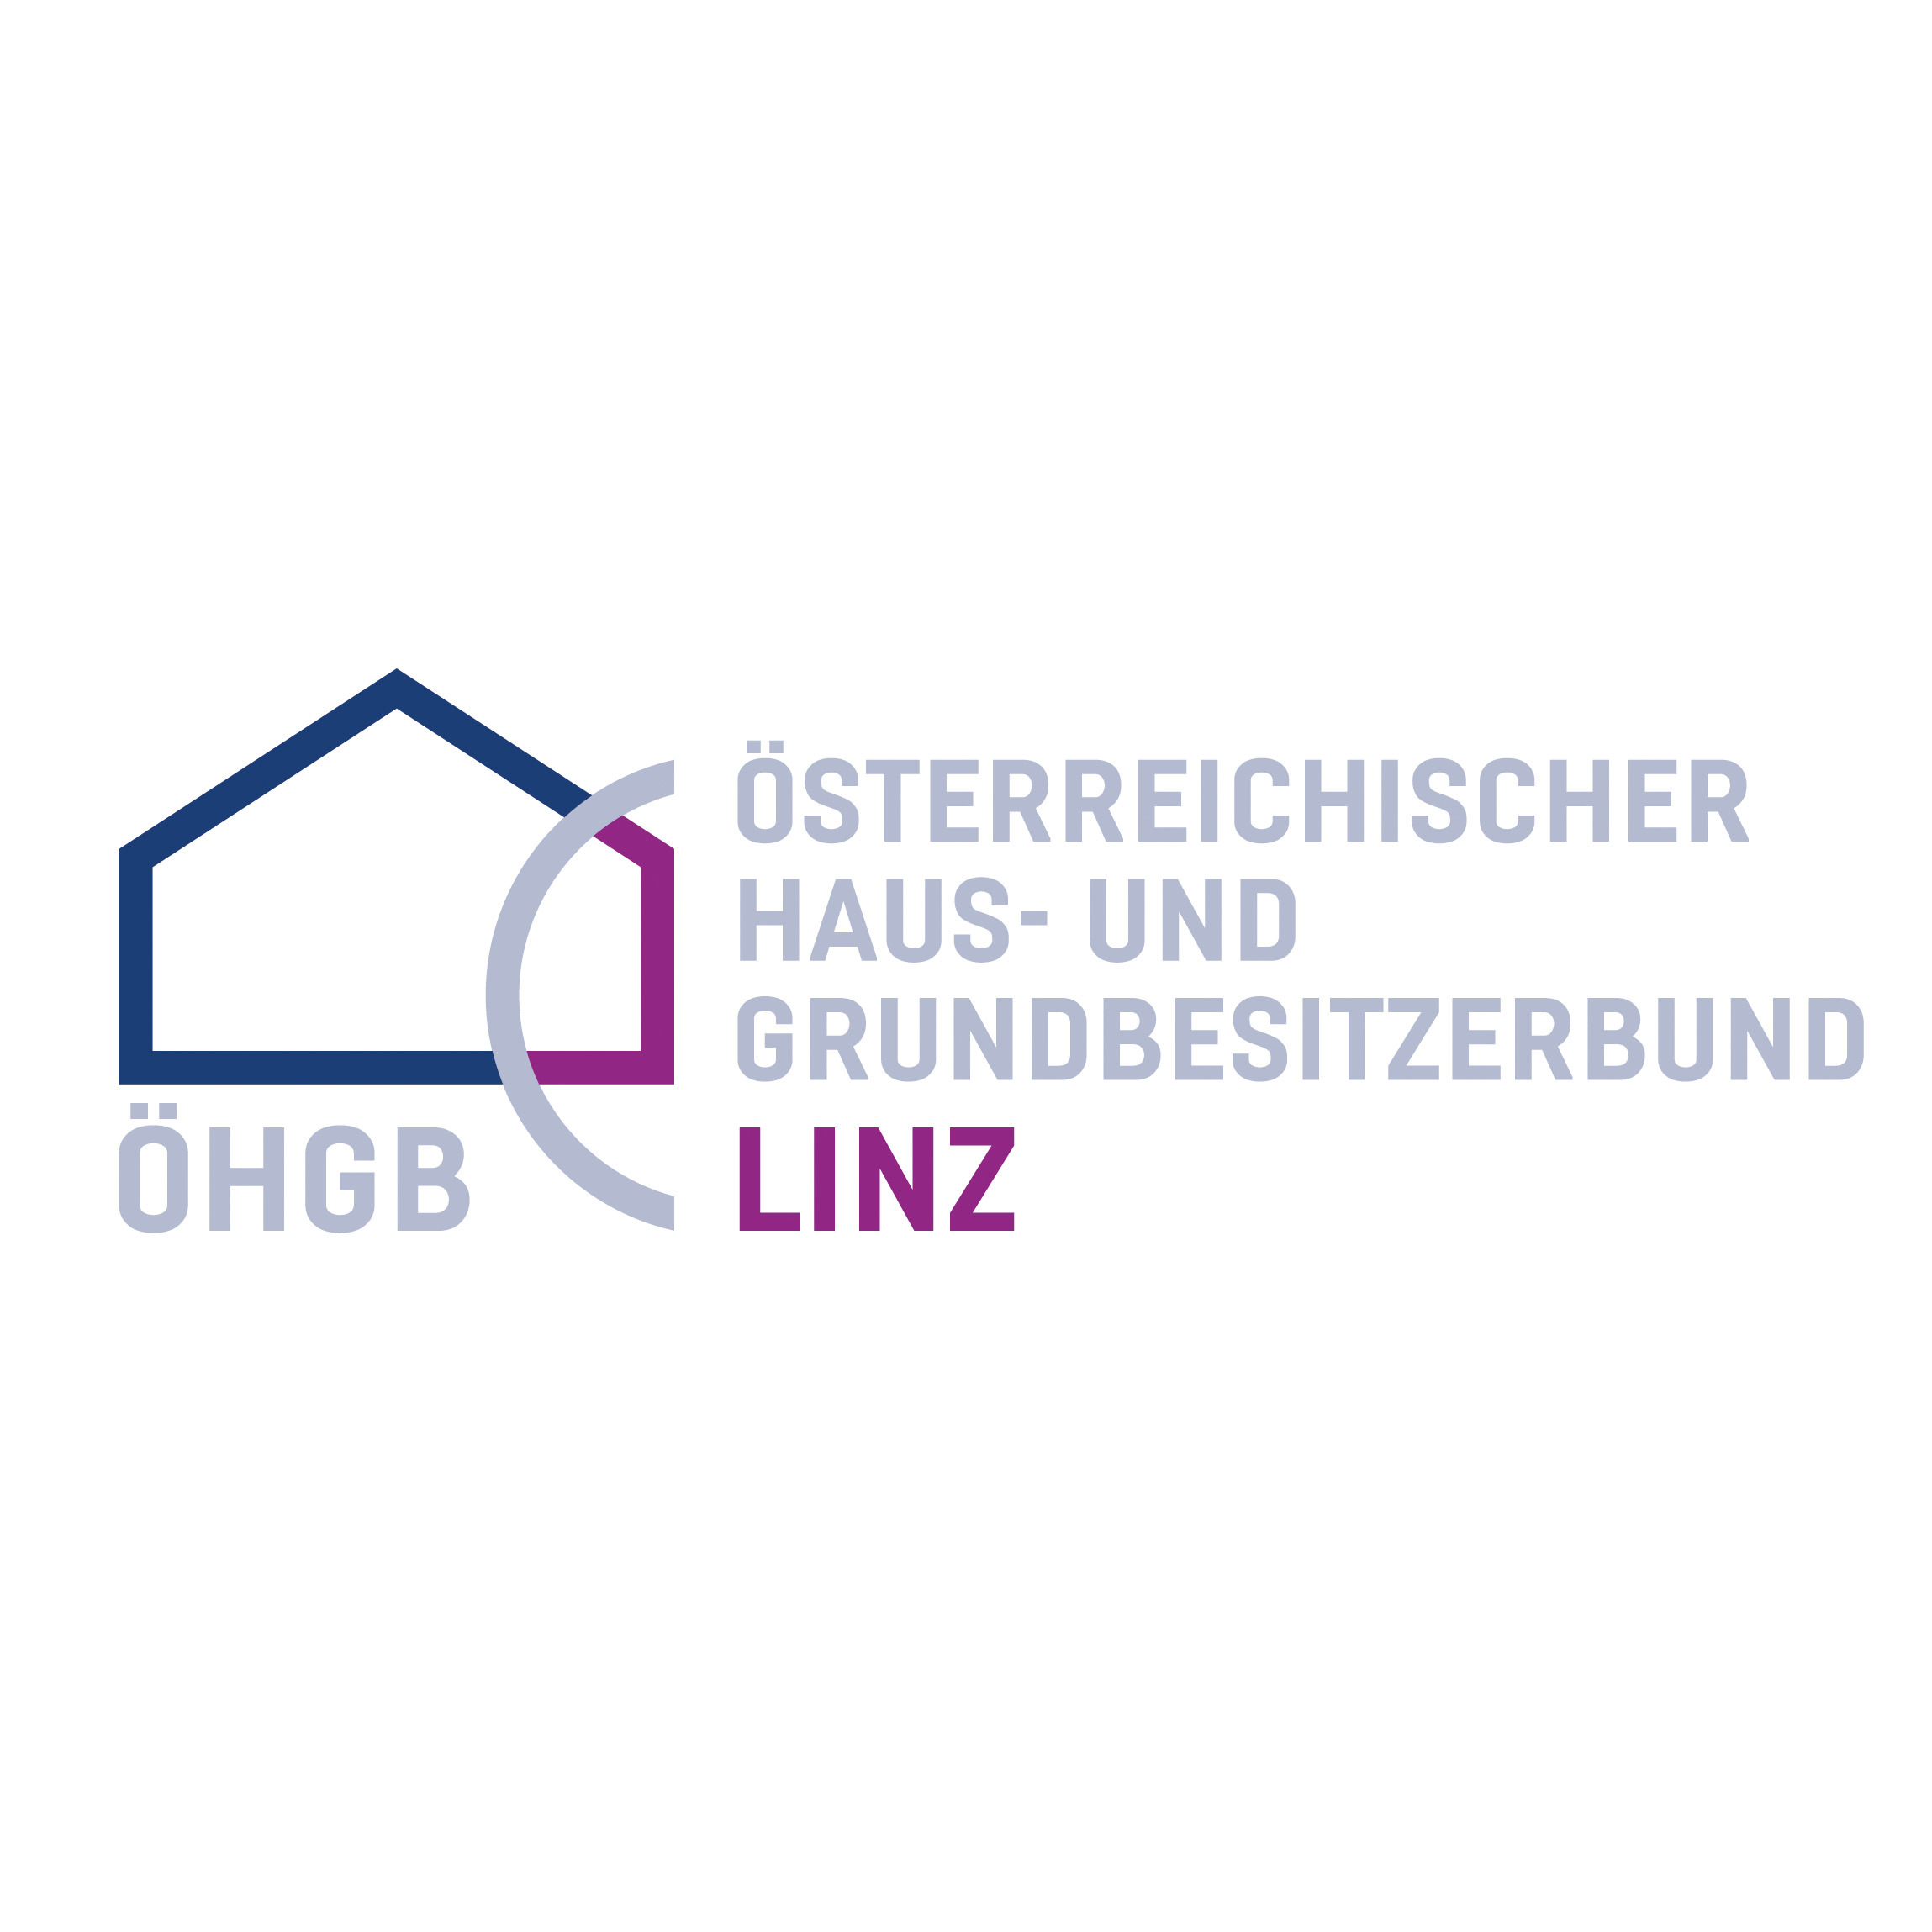 ÖHGB Linz - Österreichischer Haus- und Grundbesitzerbund Linz - Association Or Organization - Linz - 0732 7746560 Austria | ShowMeLocal.com